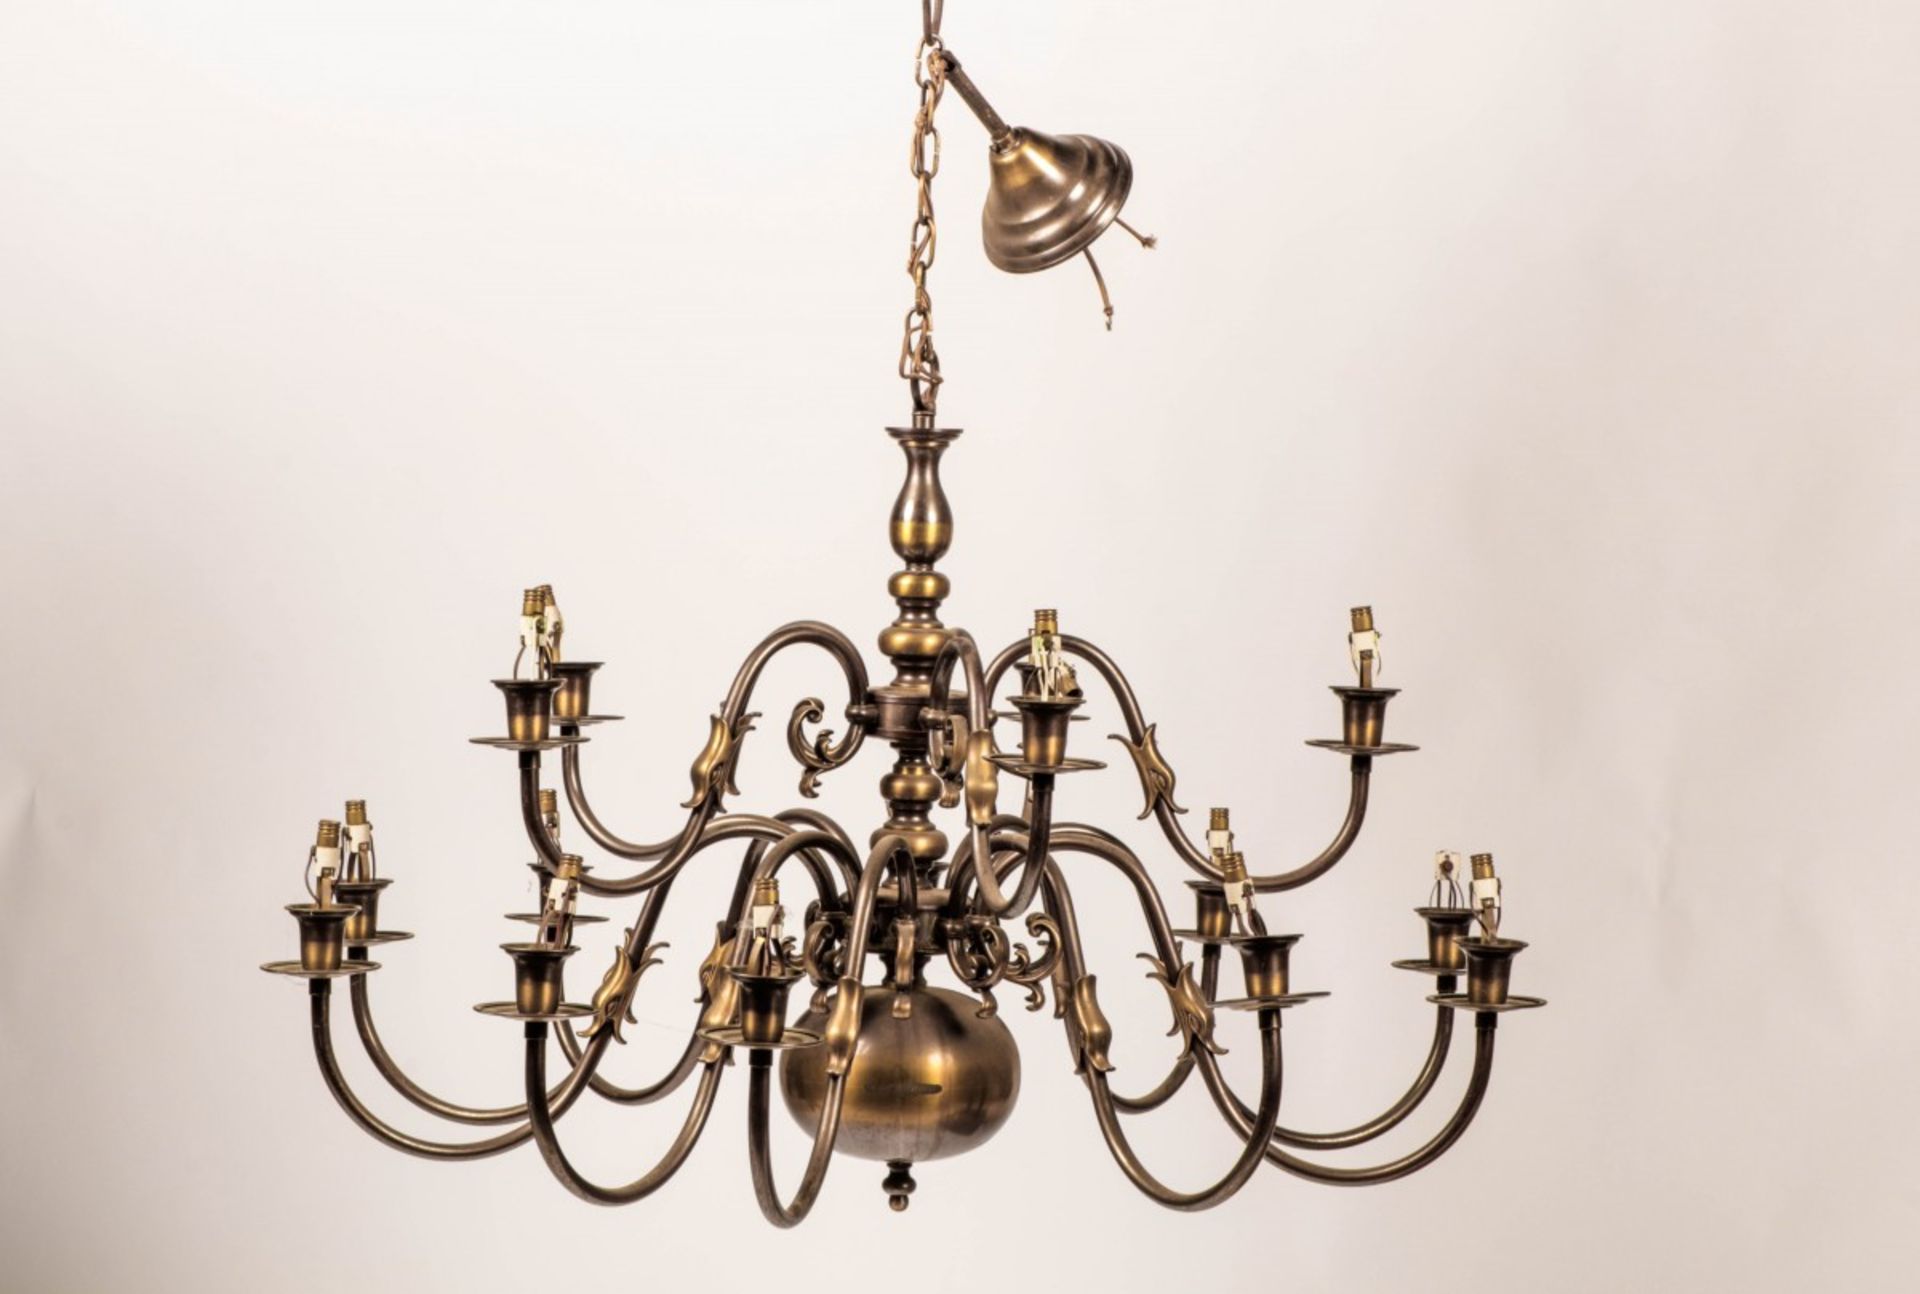 A set of (2) identical bronzed brass chandeliers, Dutch, 2nd half 20th century.